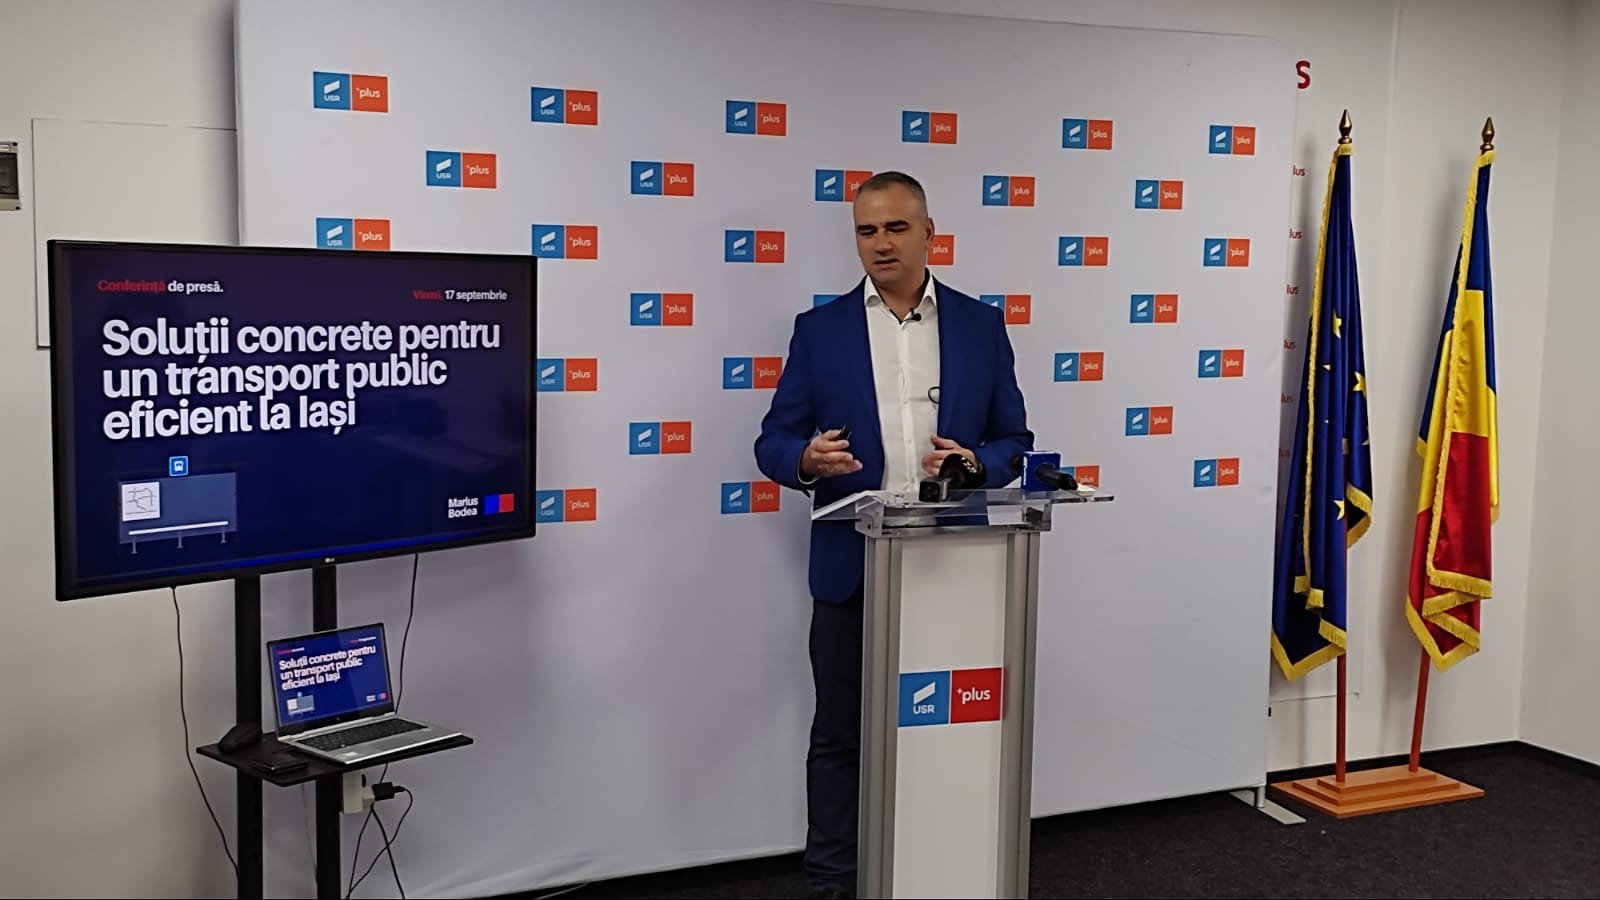  LIVE – Senatorul Marius Bodea susţine o conferinţă de presă pe tema transportului public